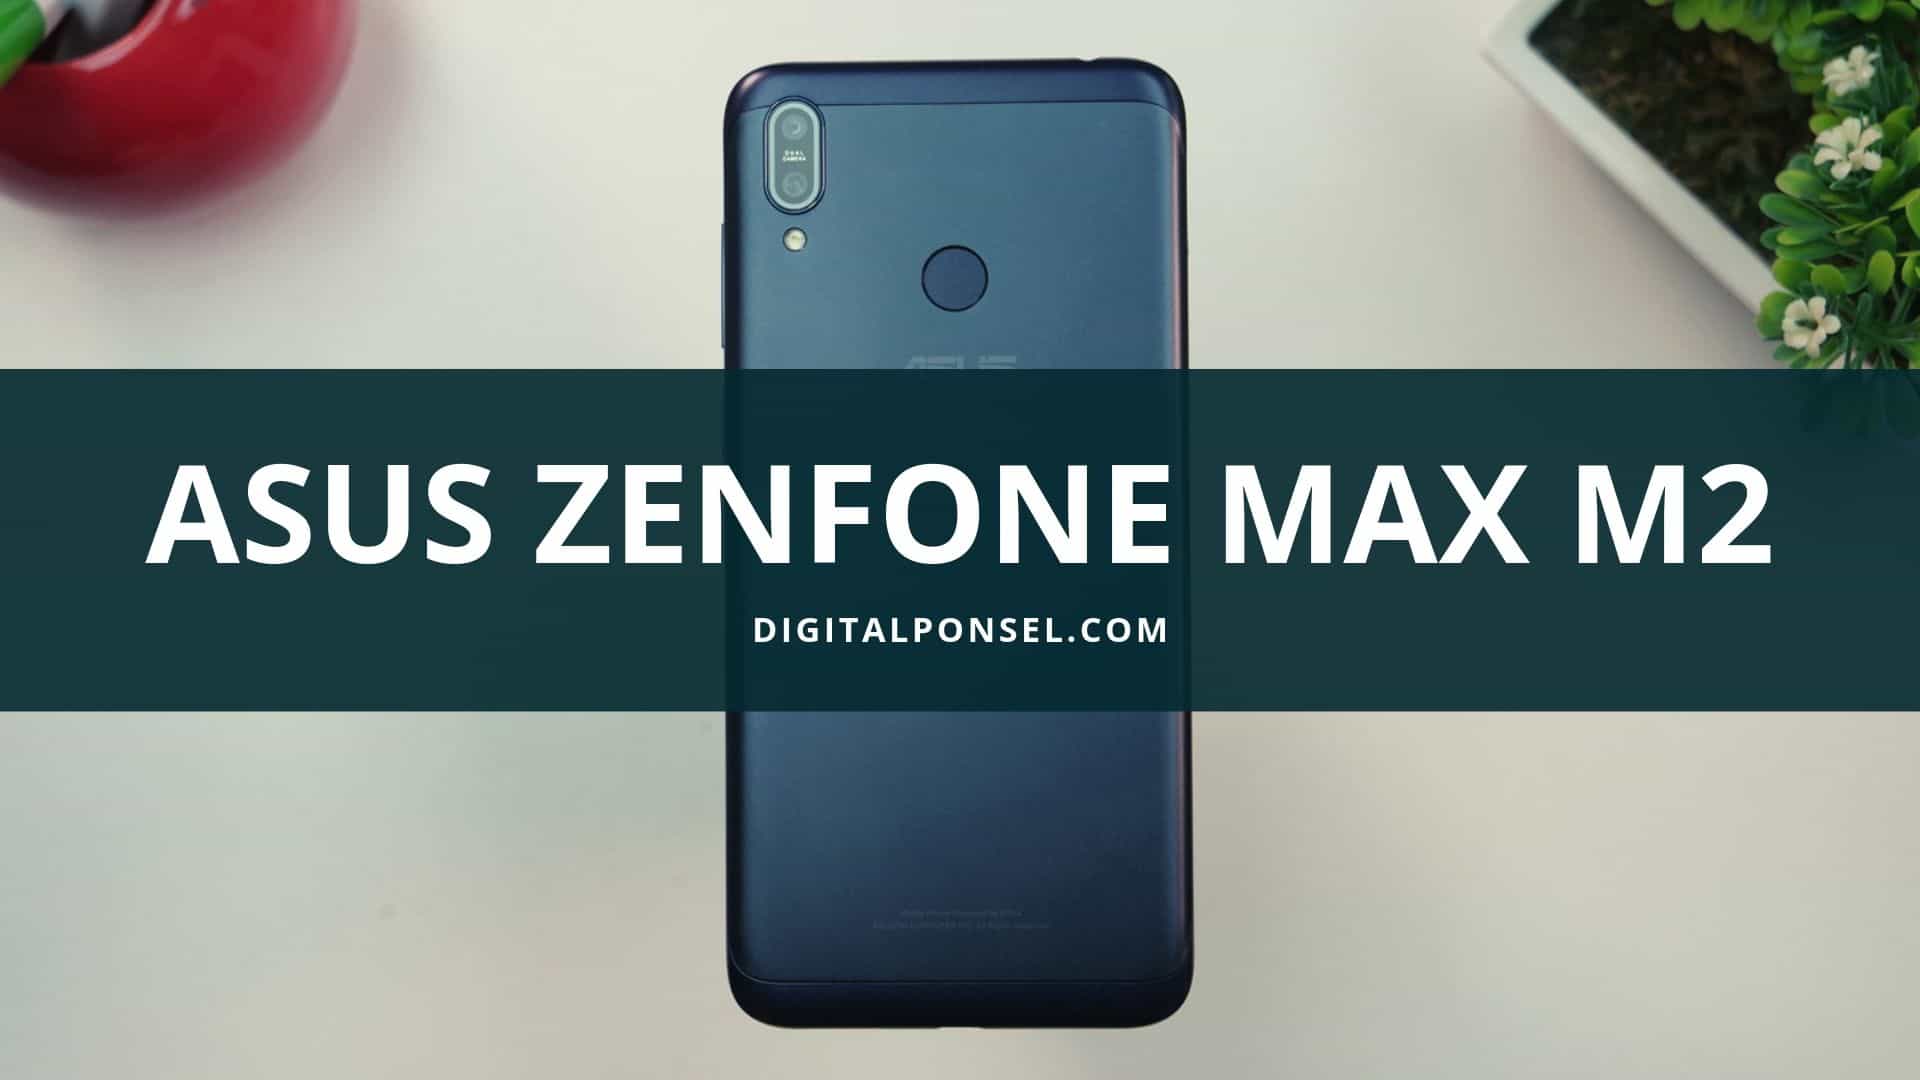 Harga Asus Zenfone Max M2 Terbaru Dan Spesifikasi Agustus